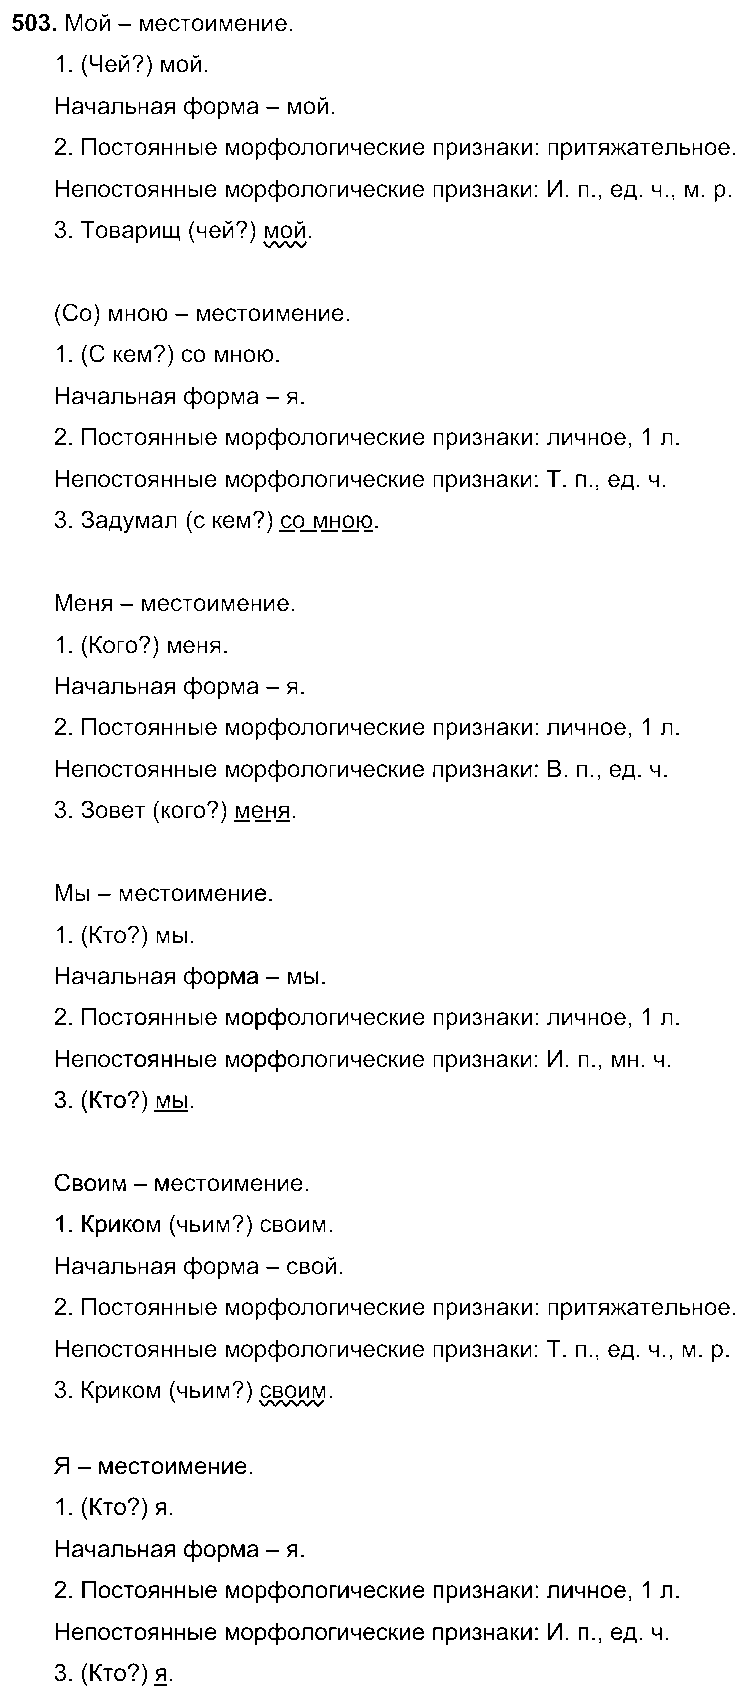 ГДЗ Русский язык 6 класс - 503